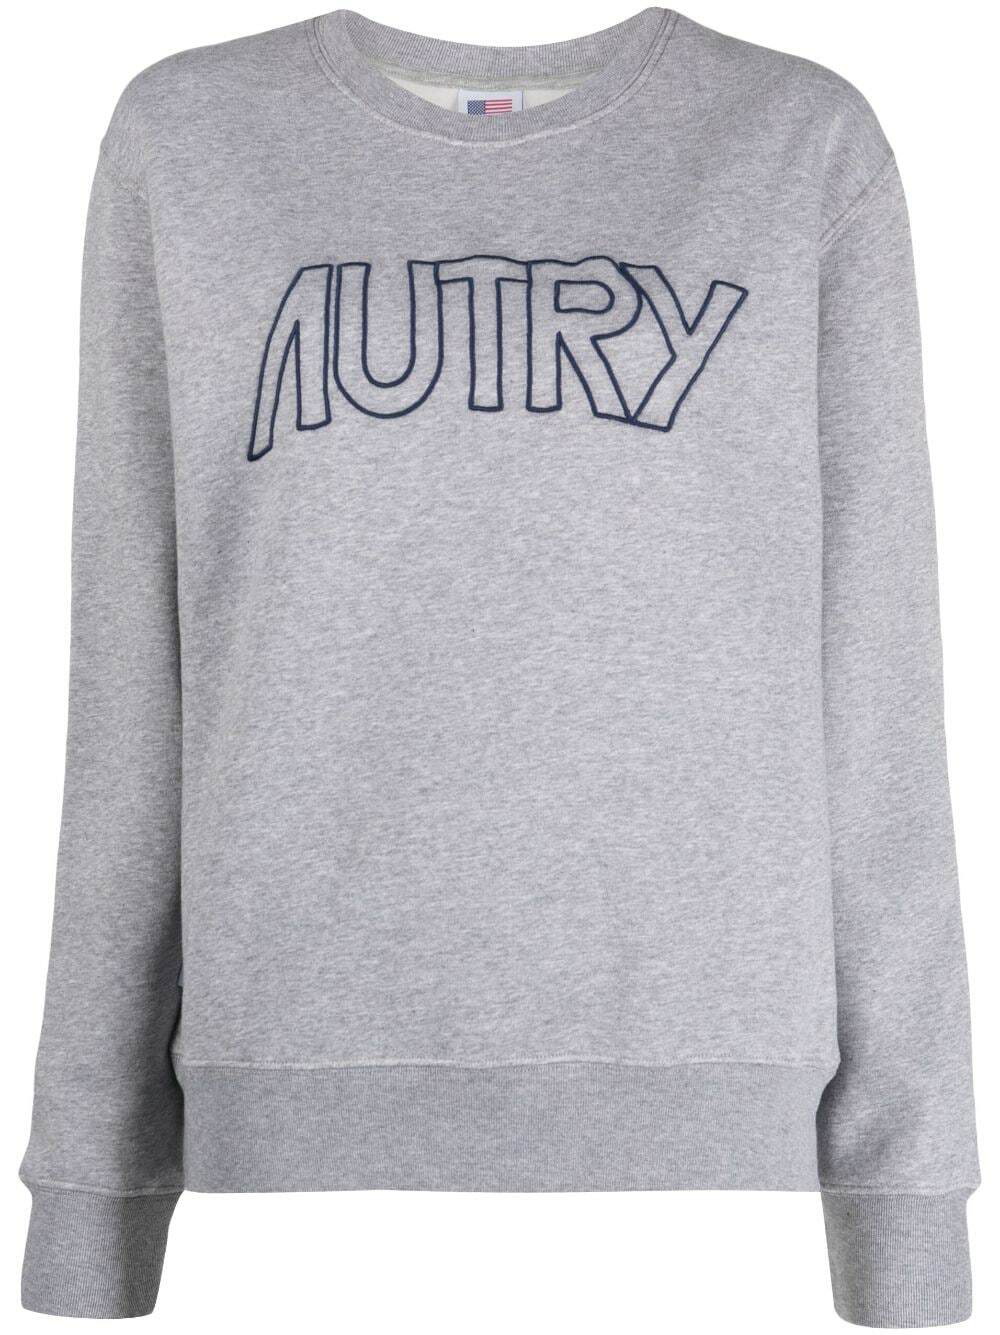 AUTRY - Sweatshirt With Logo Autry